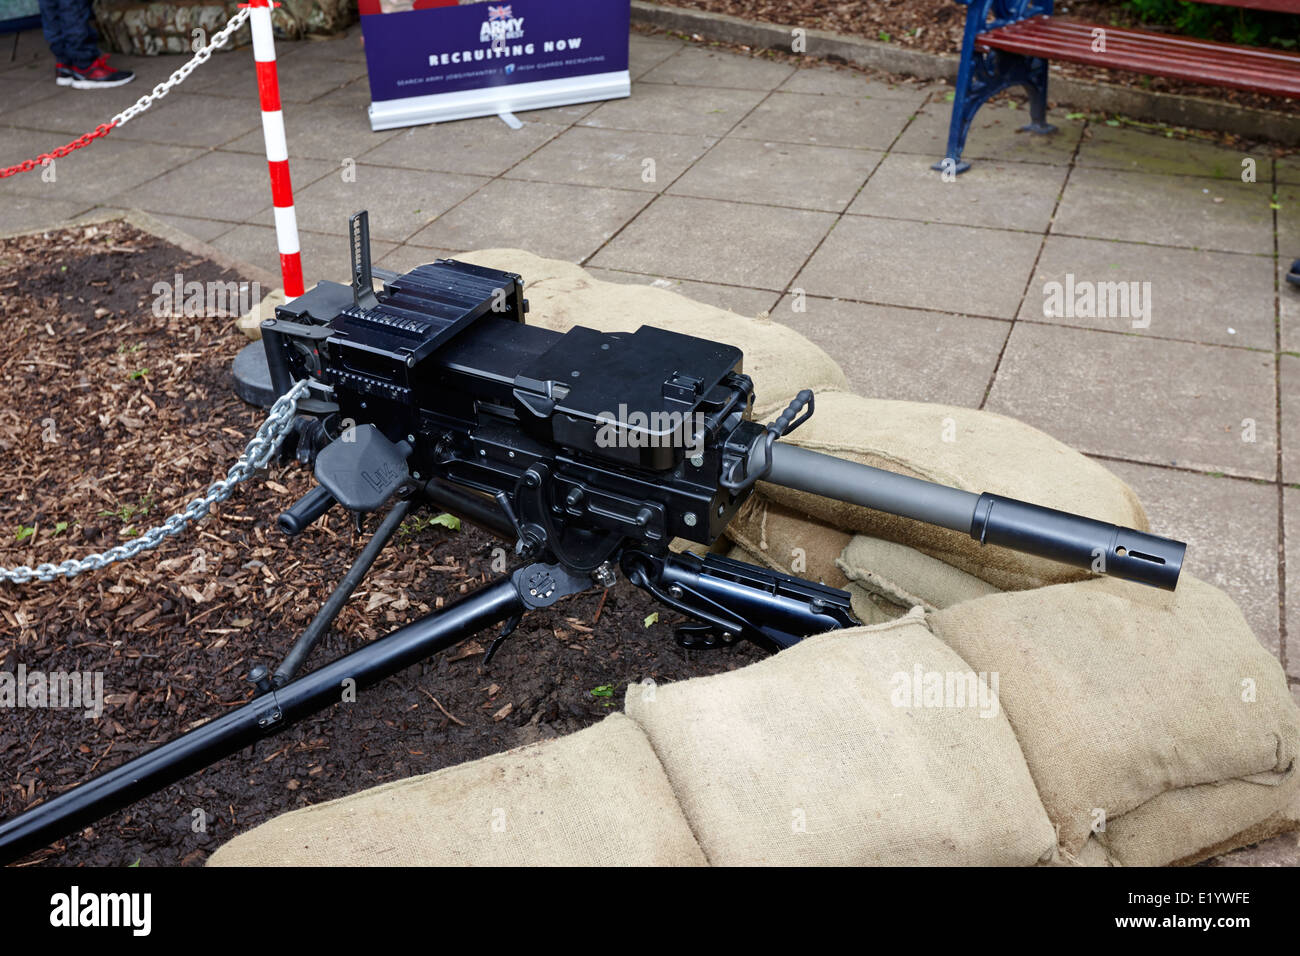 Heckler y Koch 40mm ametralladora granada gmg armas del ejército británico en la exhibición en una jornada de puertas abiertas Foto de stock